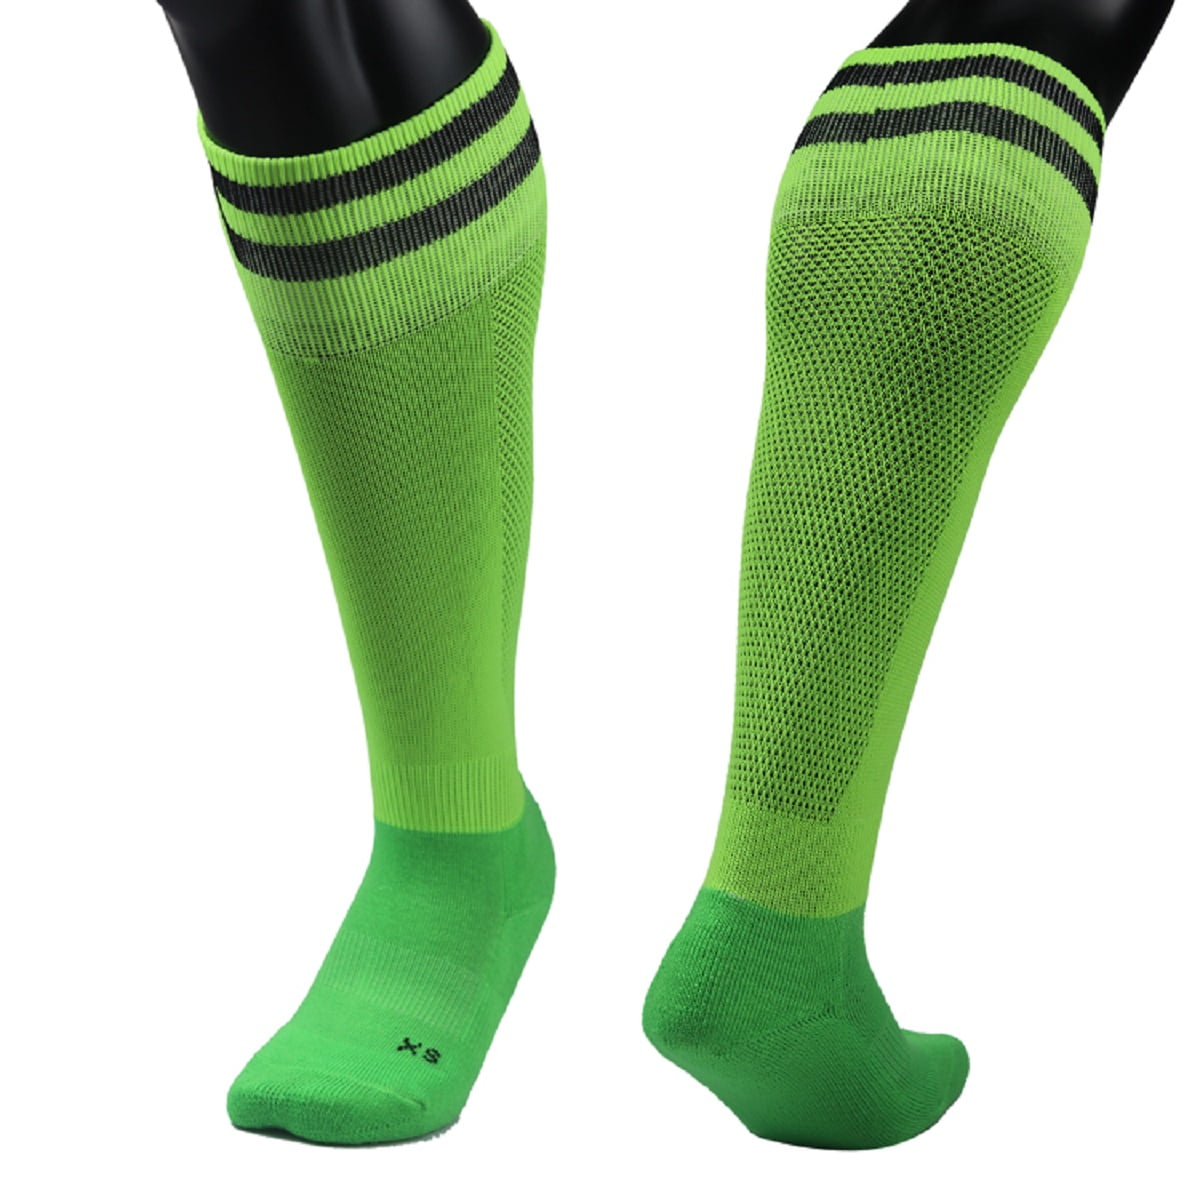 Jcolour Soccer Socks Unisex Solid Knee High Team Sports Socks Pack of 2/6/10 